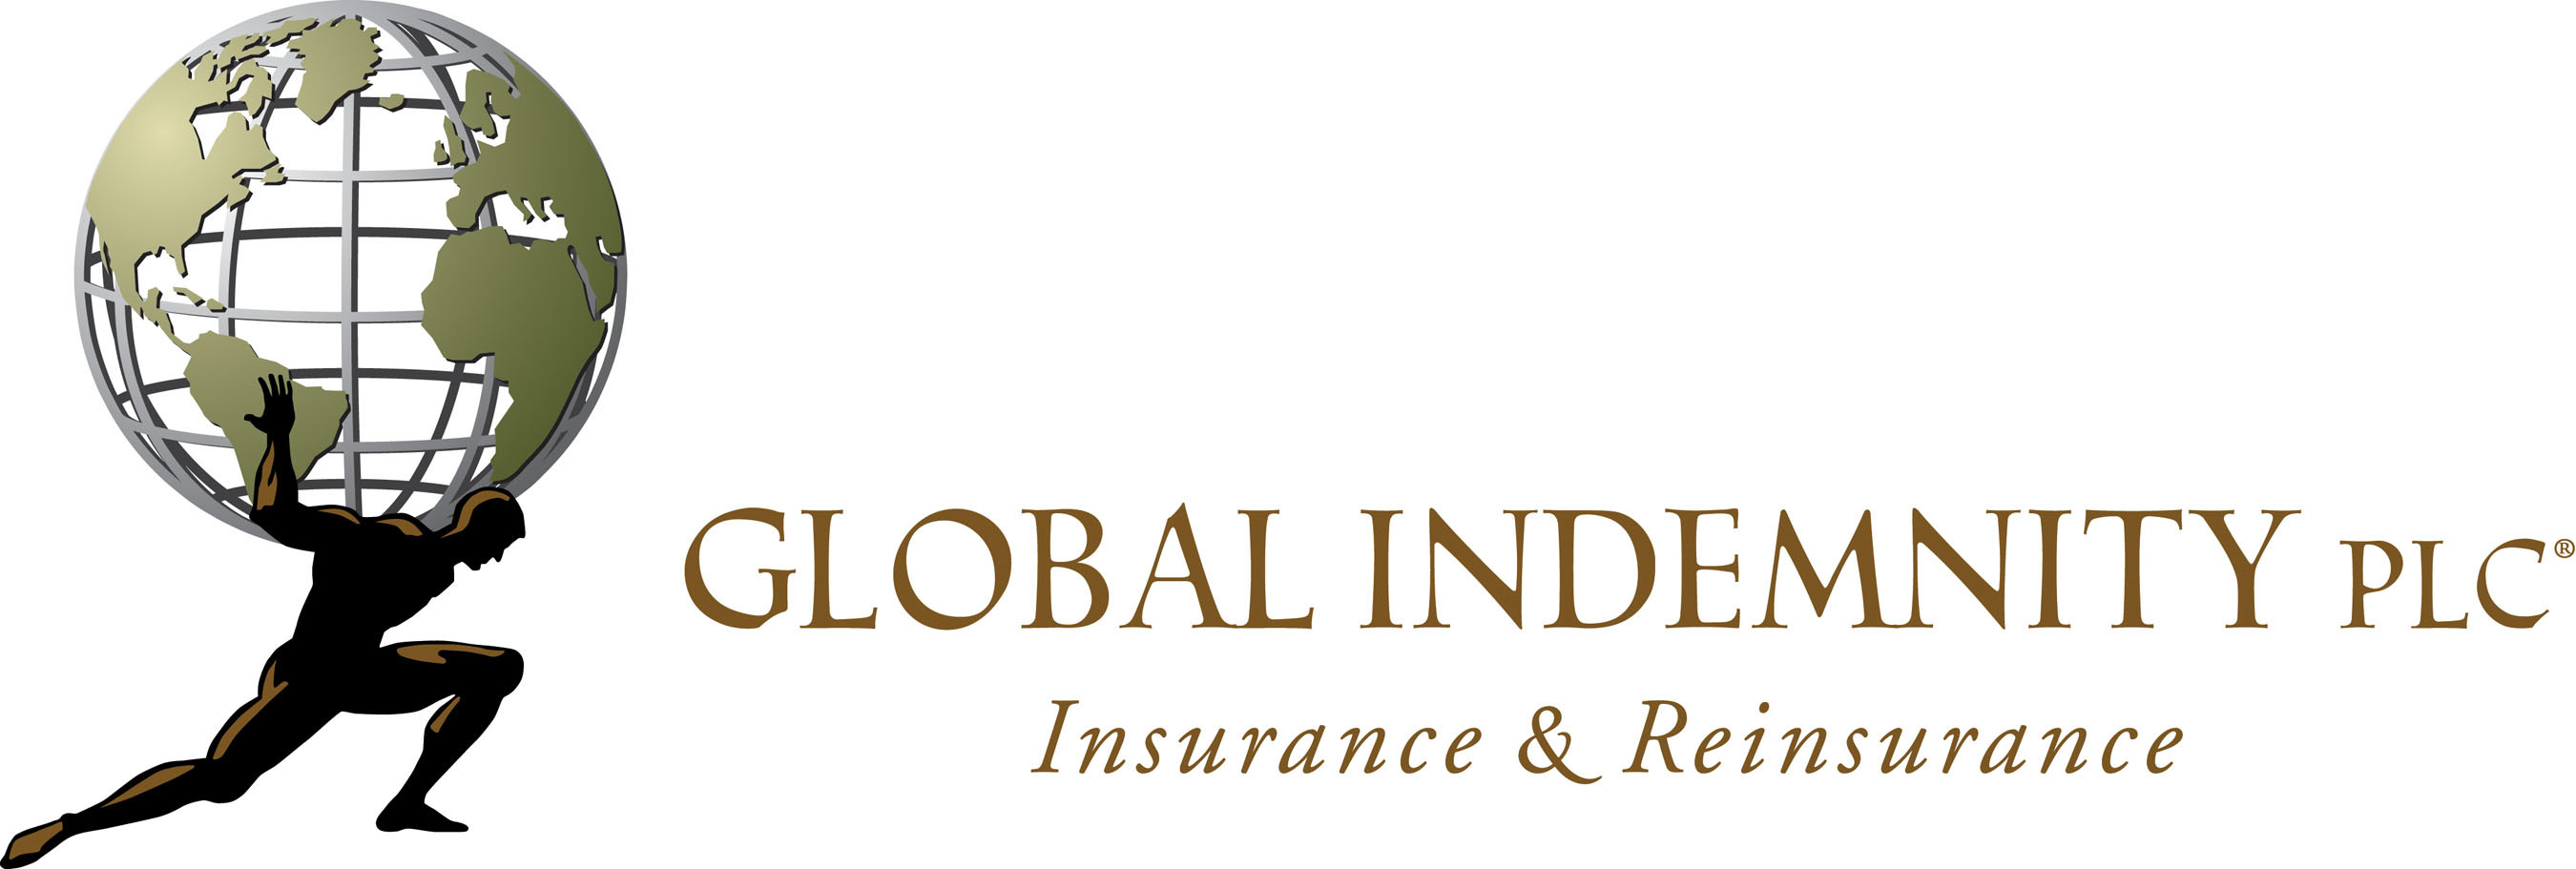 Global Indemnity plc logo. (PRNewsFoto/Global Indemnity plc) (PRNewsFoto/)